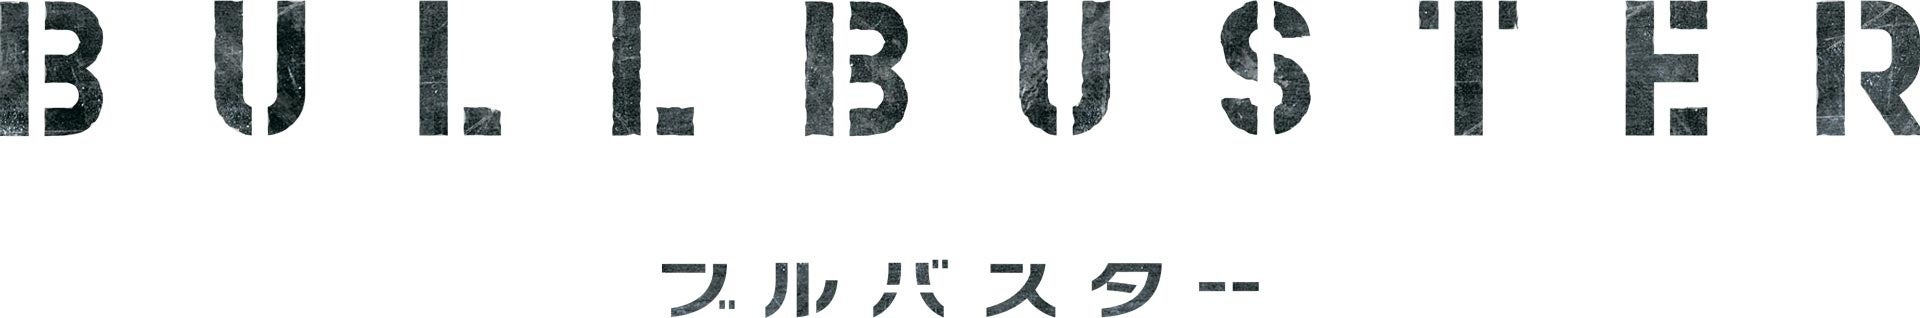 P.I.C.S.とIMAGICA EEX、アニメ × 音楽 × プロジェクションマッピングの祭典「TOKYO FUTURE NIGHT」11月11日(土)に東京ビッグサイトにて開催！